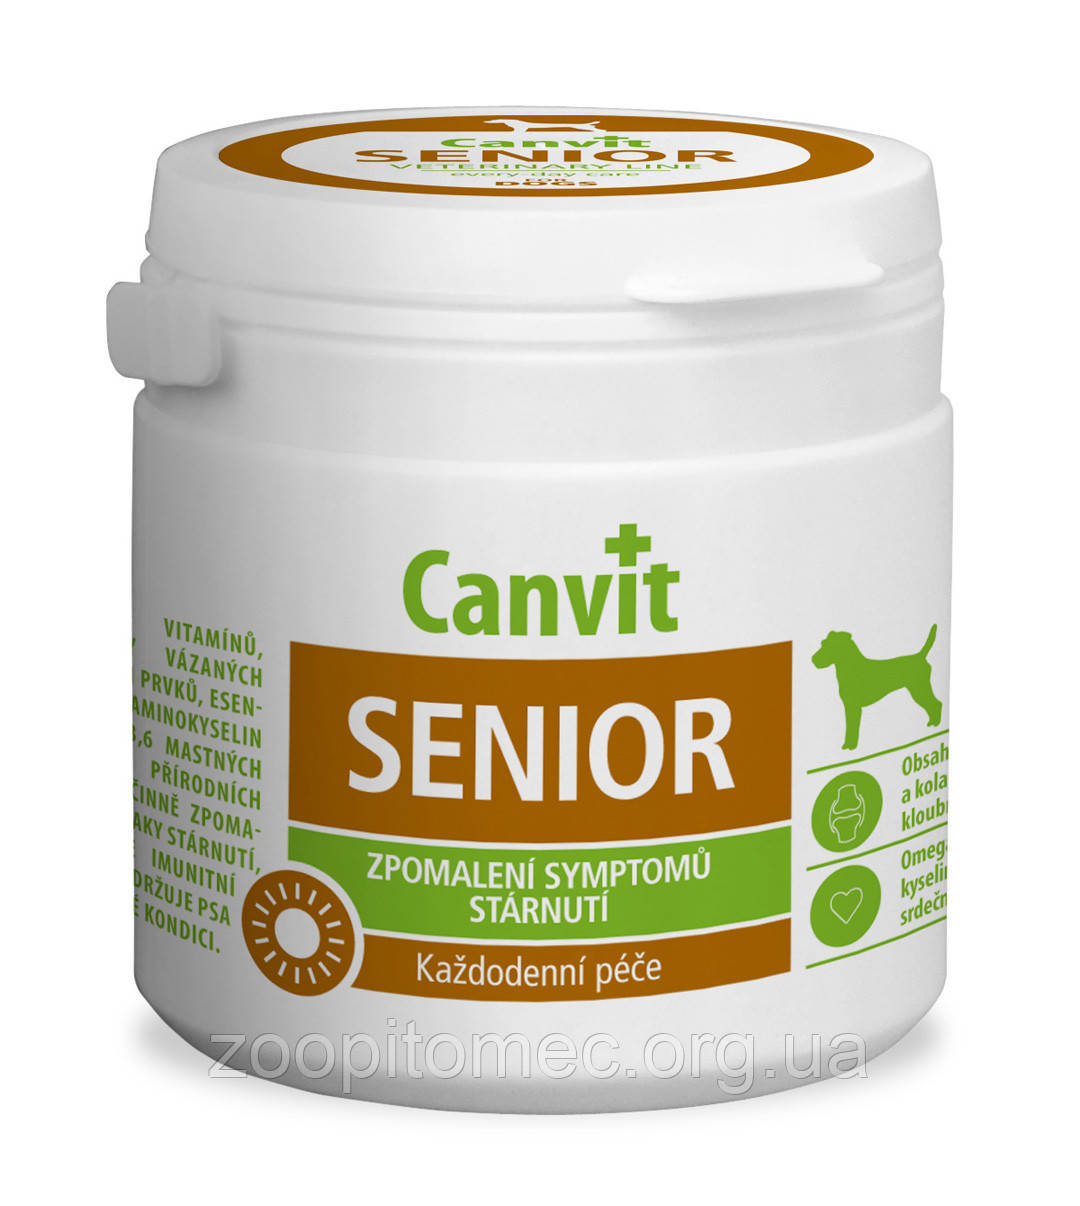 Вітаміни для собак Сanvit Канвит Senior for dogs Уповільнення старіння, 100 г